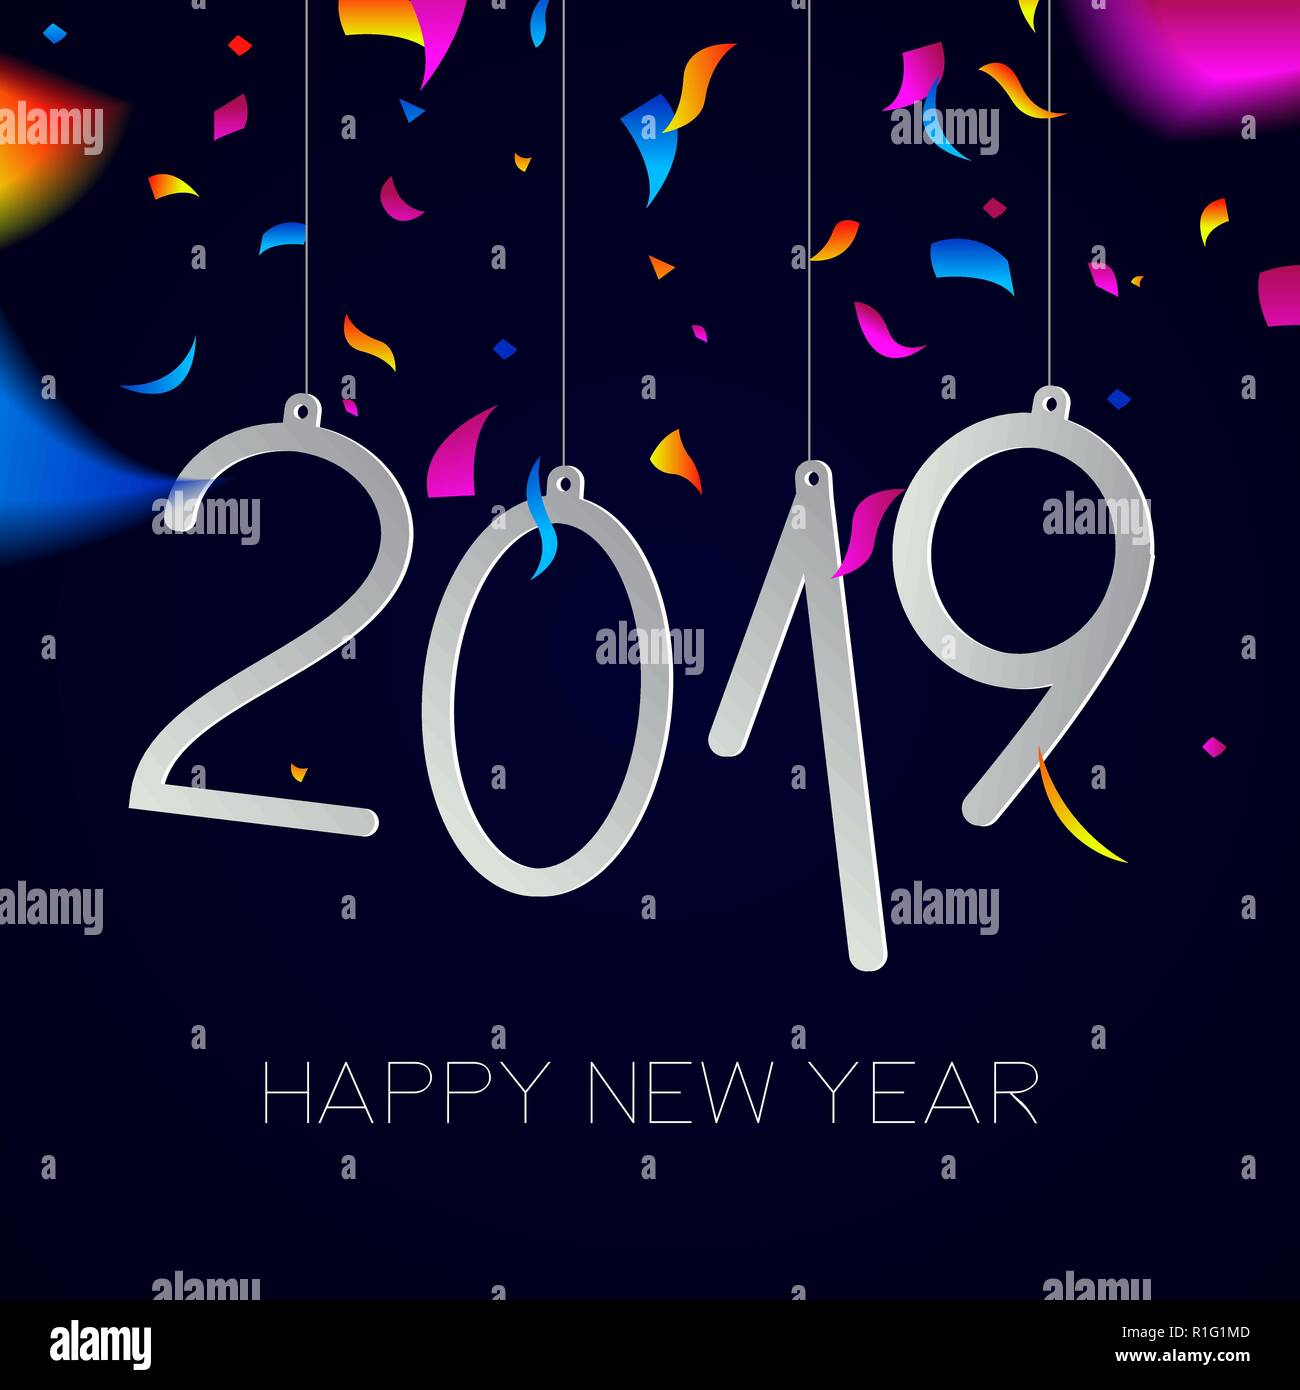 Frohes Neues Jahr 2019 Grußkarte Abbildung mit Urlaub Angebot und Party Konfetti Explosion. Stock Vektor